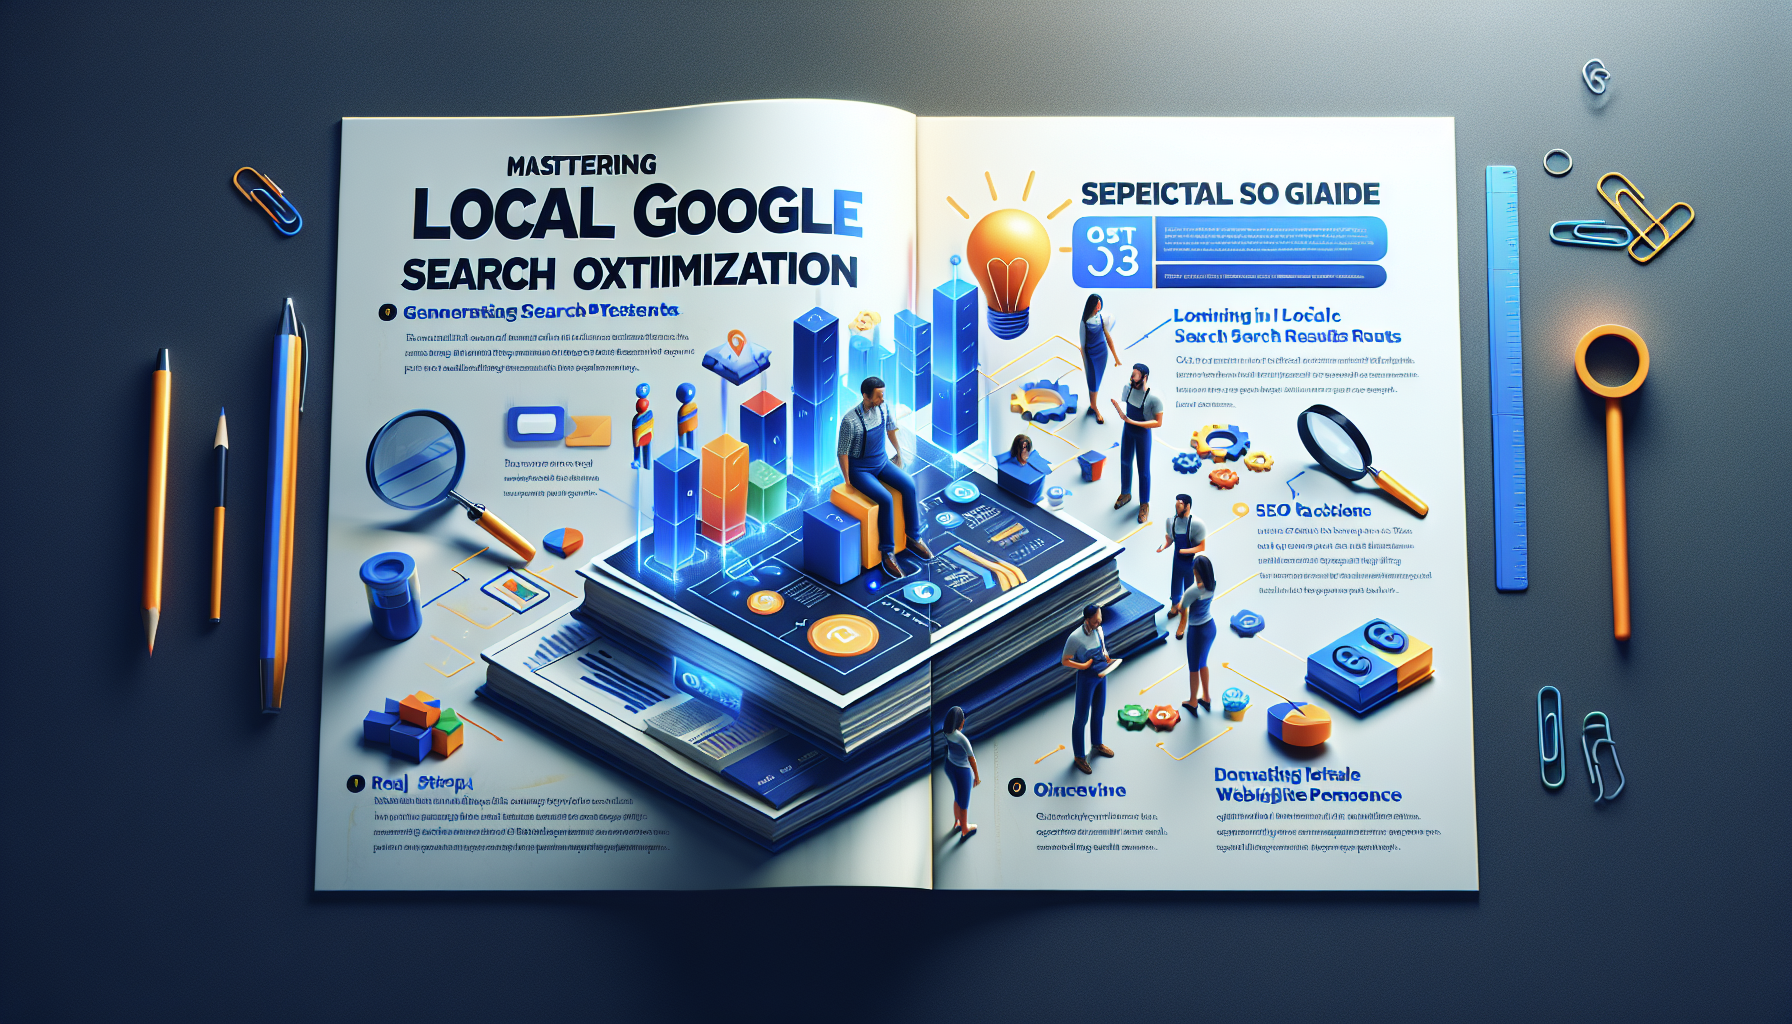 découvrez les bonnes pratiques en seo pour optimiser votre présence dans les résultats locaux de google avec ce guide complet.